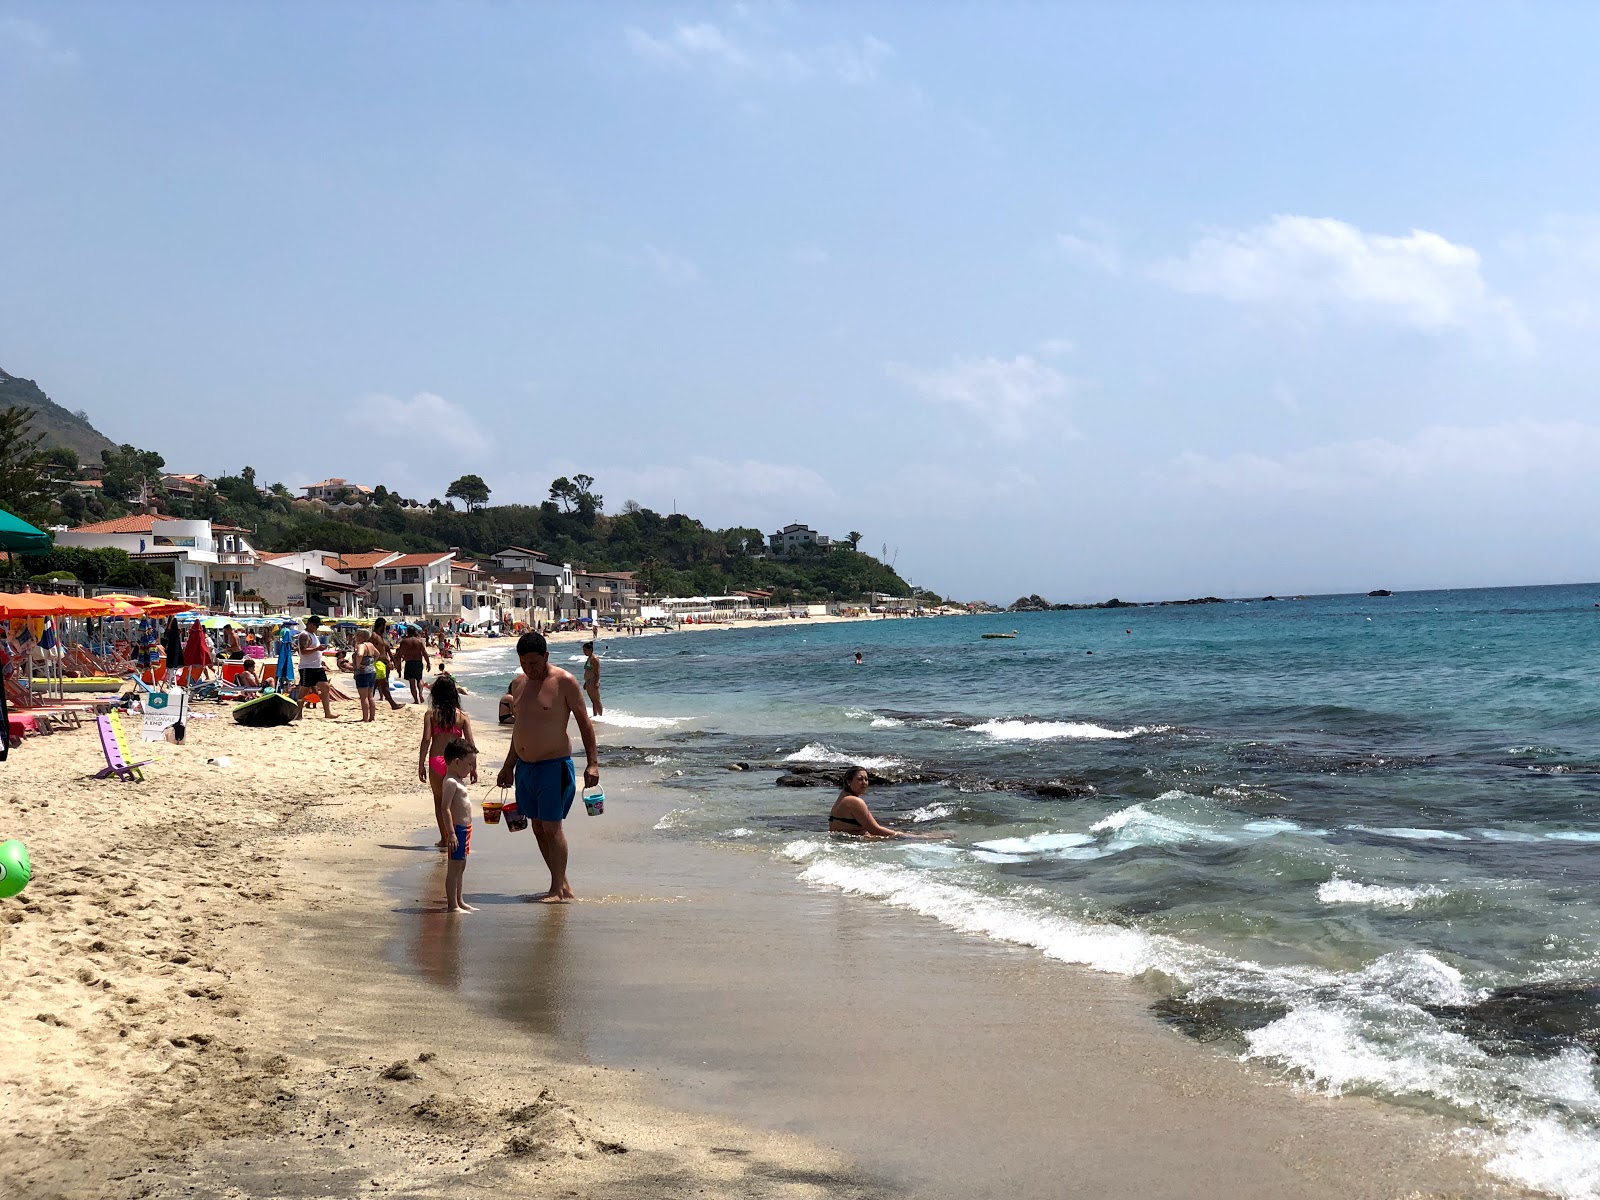 Spiaggia Santa Maria'in fotoğrafı geniş plaj ile birlikte